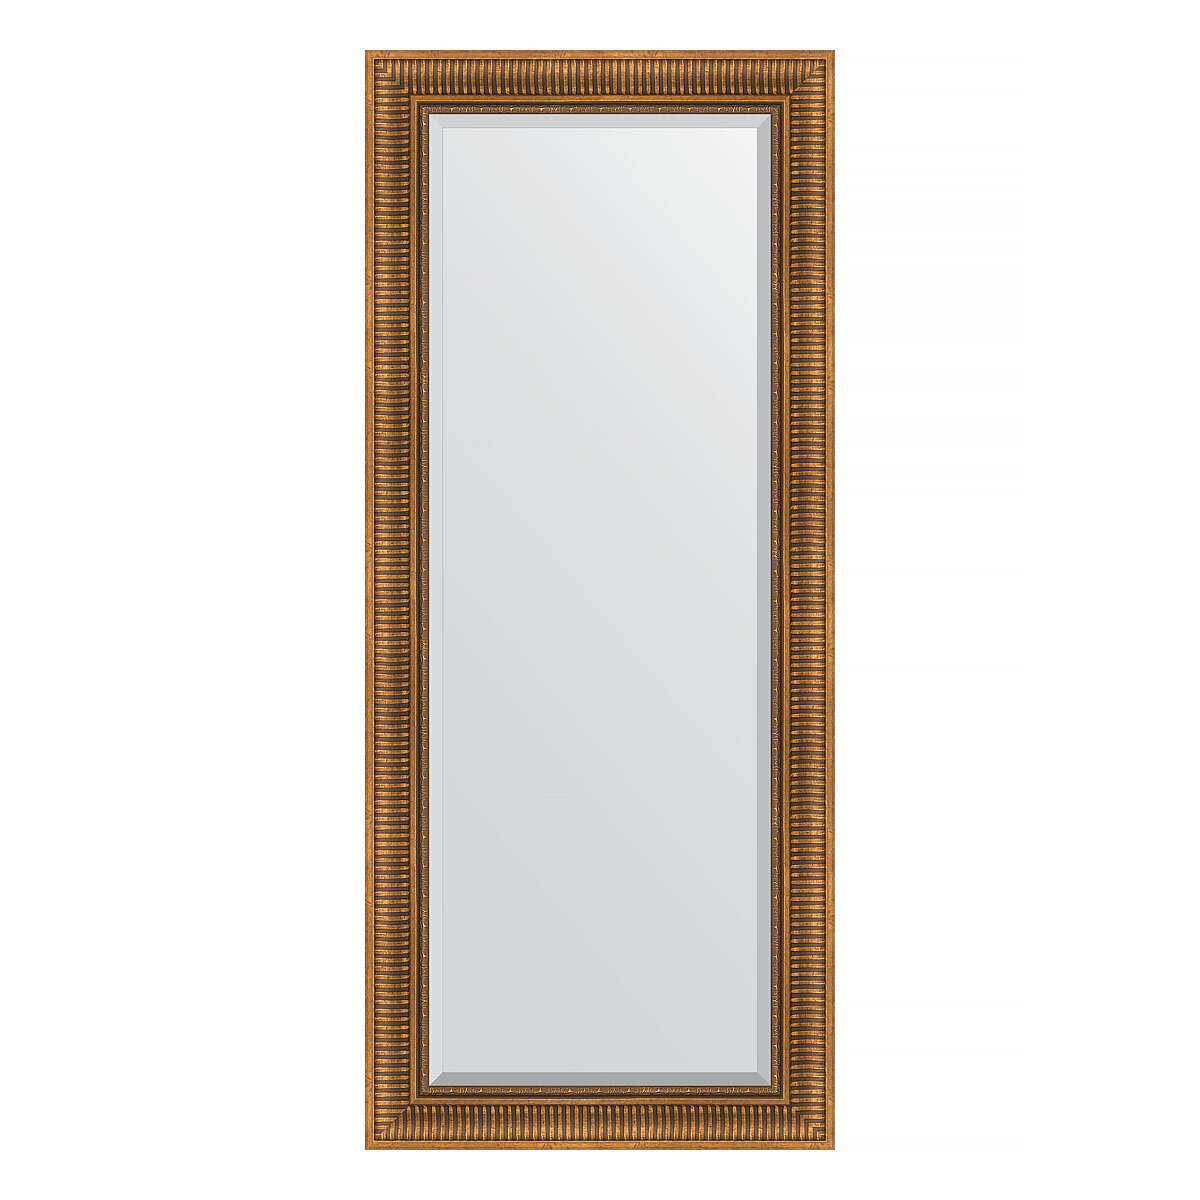 Evoform Зеркало настенное с фацетом EVOFORM в багетной раме бронзовый акведук, 67х157 см, BY 3570